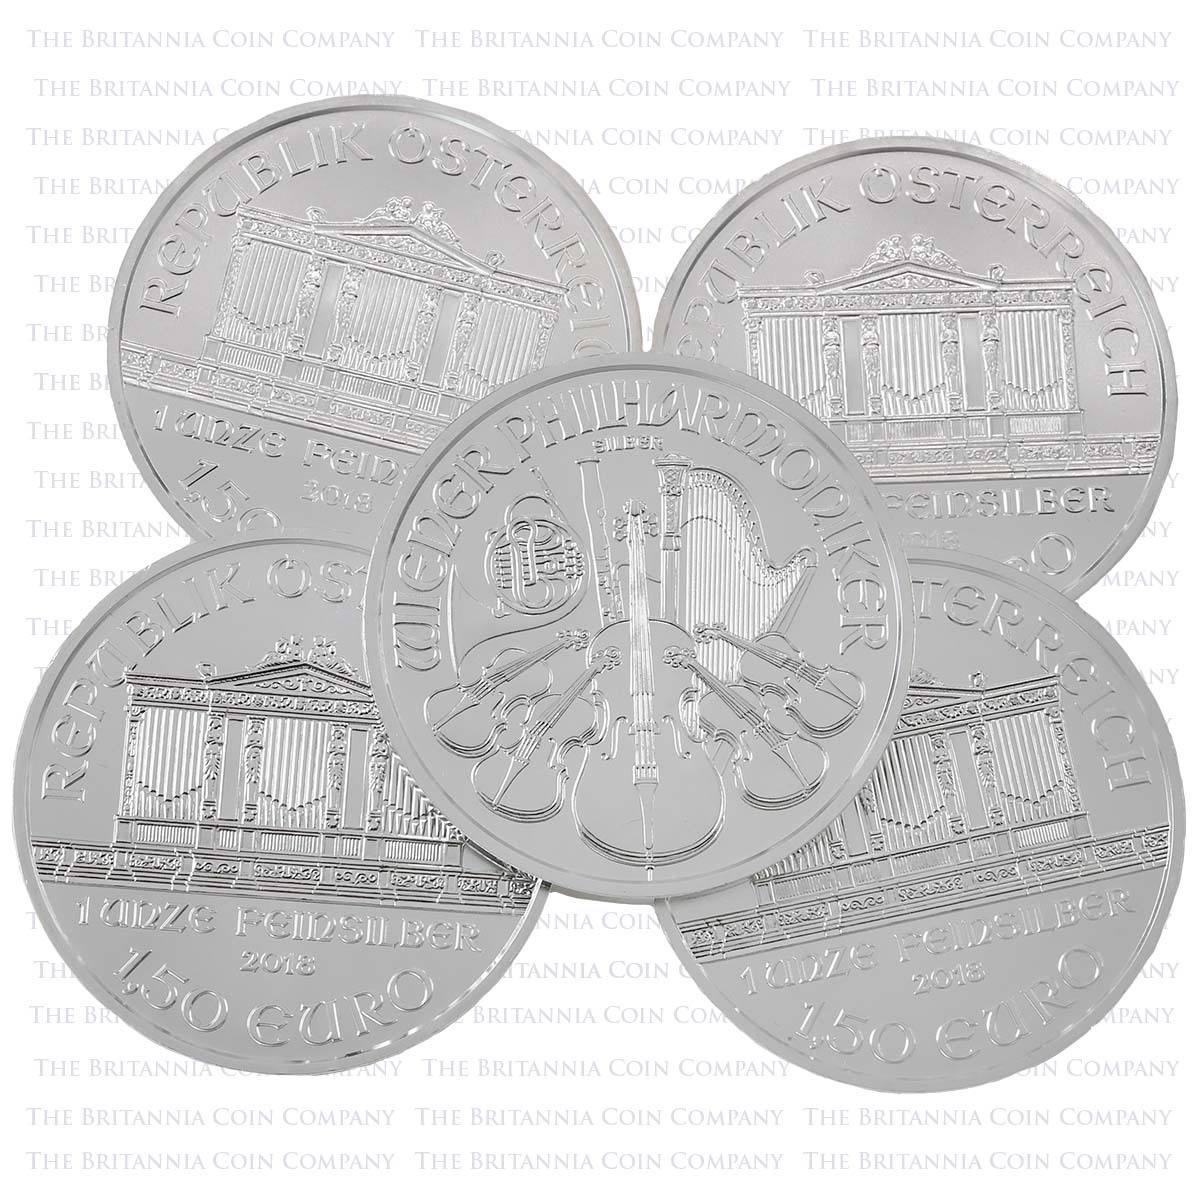 1 Ounce Silver Austrian Philharmonic Best Value VAT Free Coins